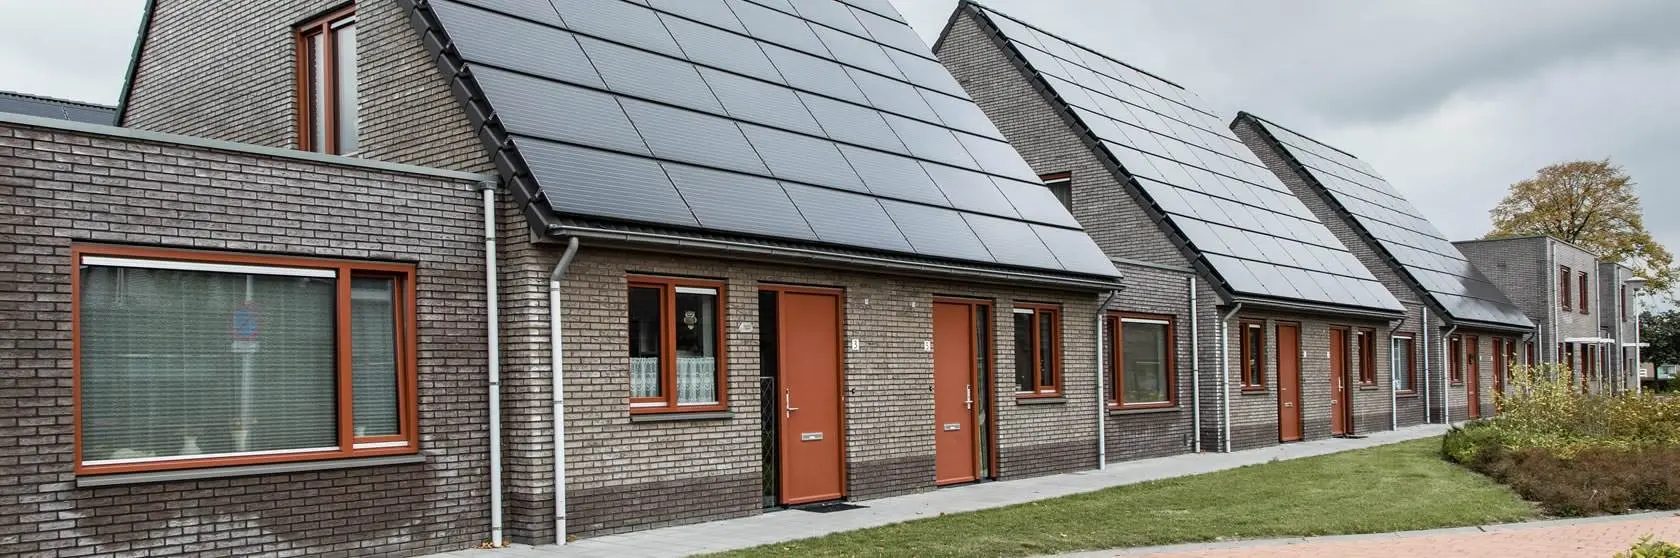 Duurzaamheidsconcepten van installatiebedrijf Mampaey actief in Rijnsburg en omgeving